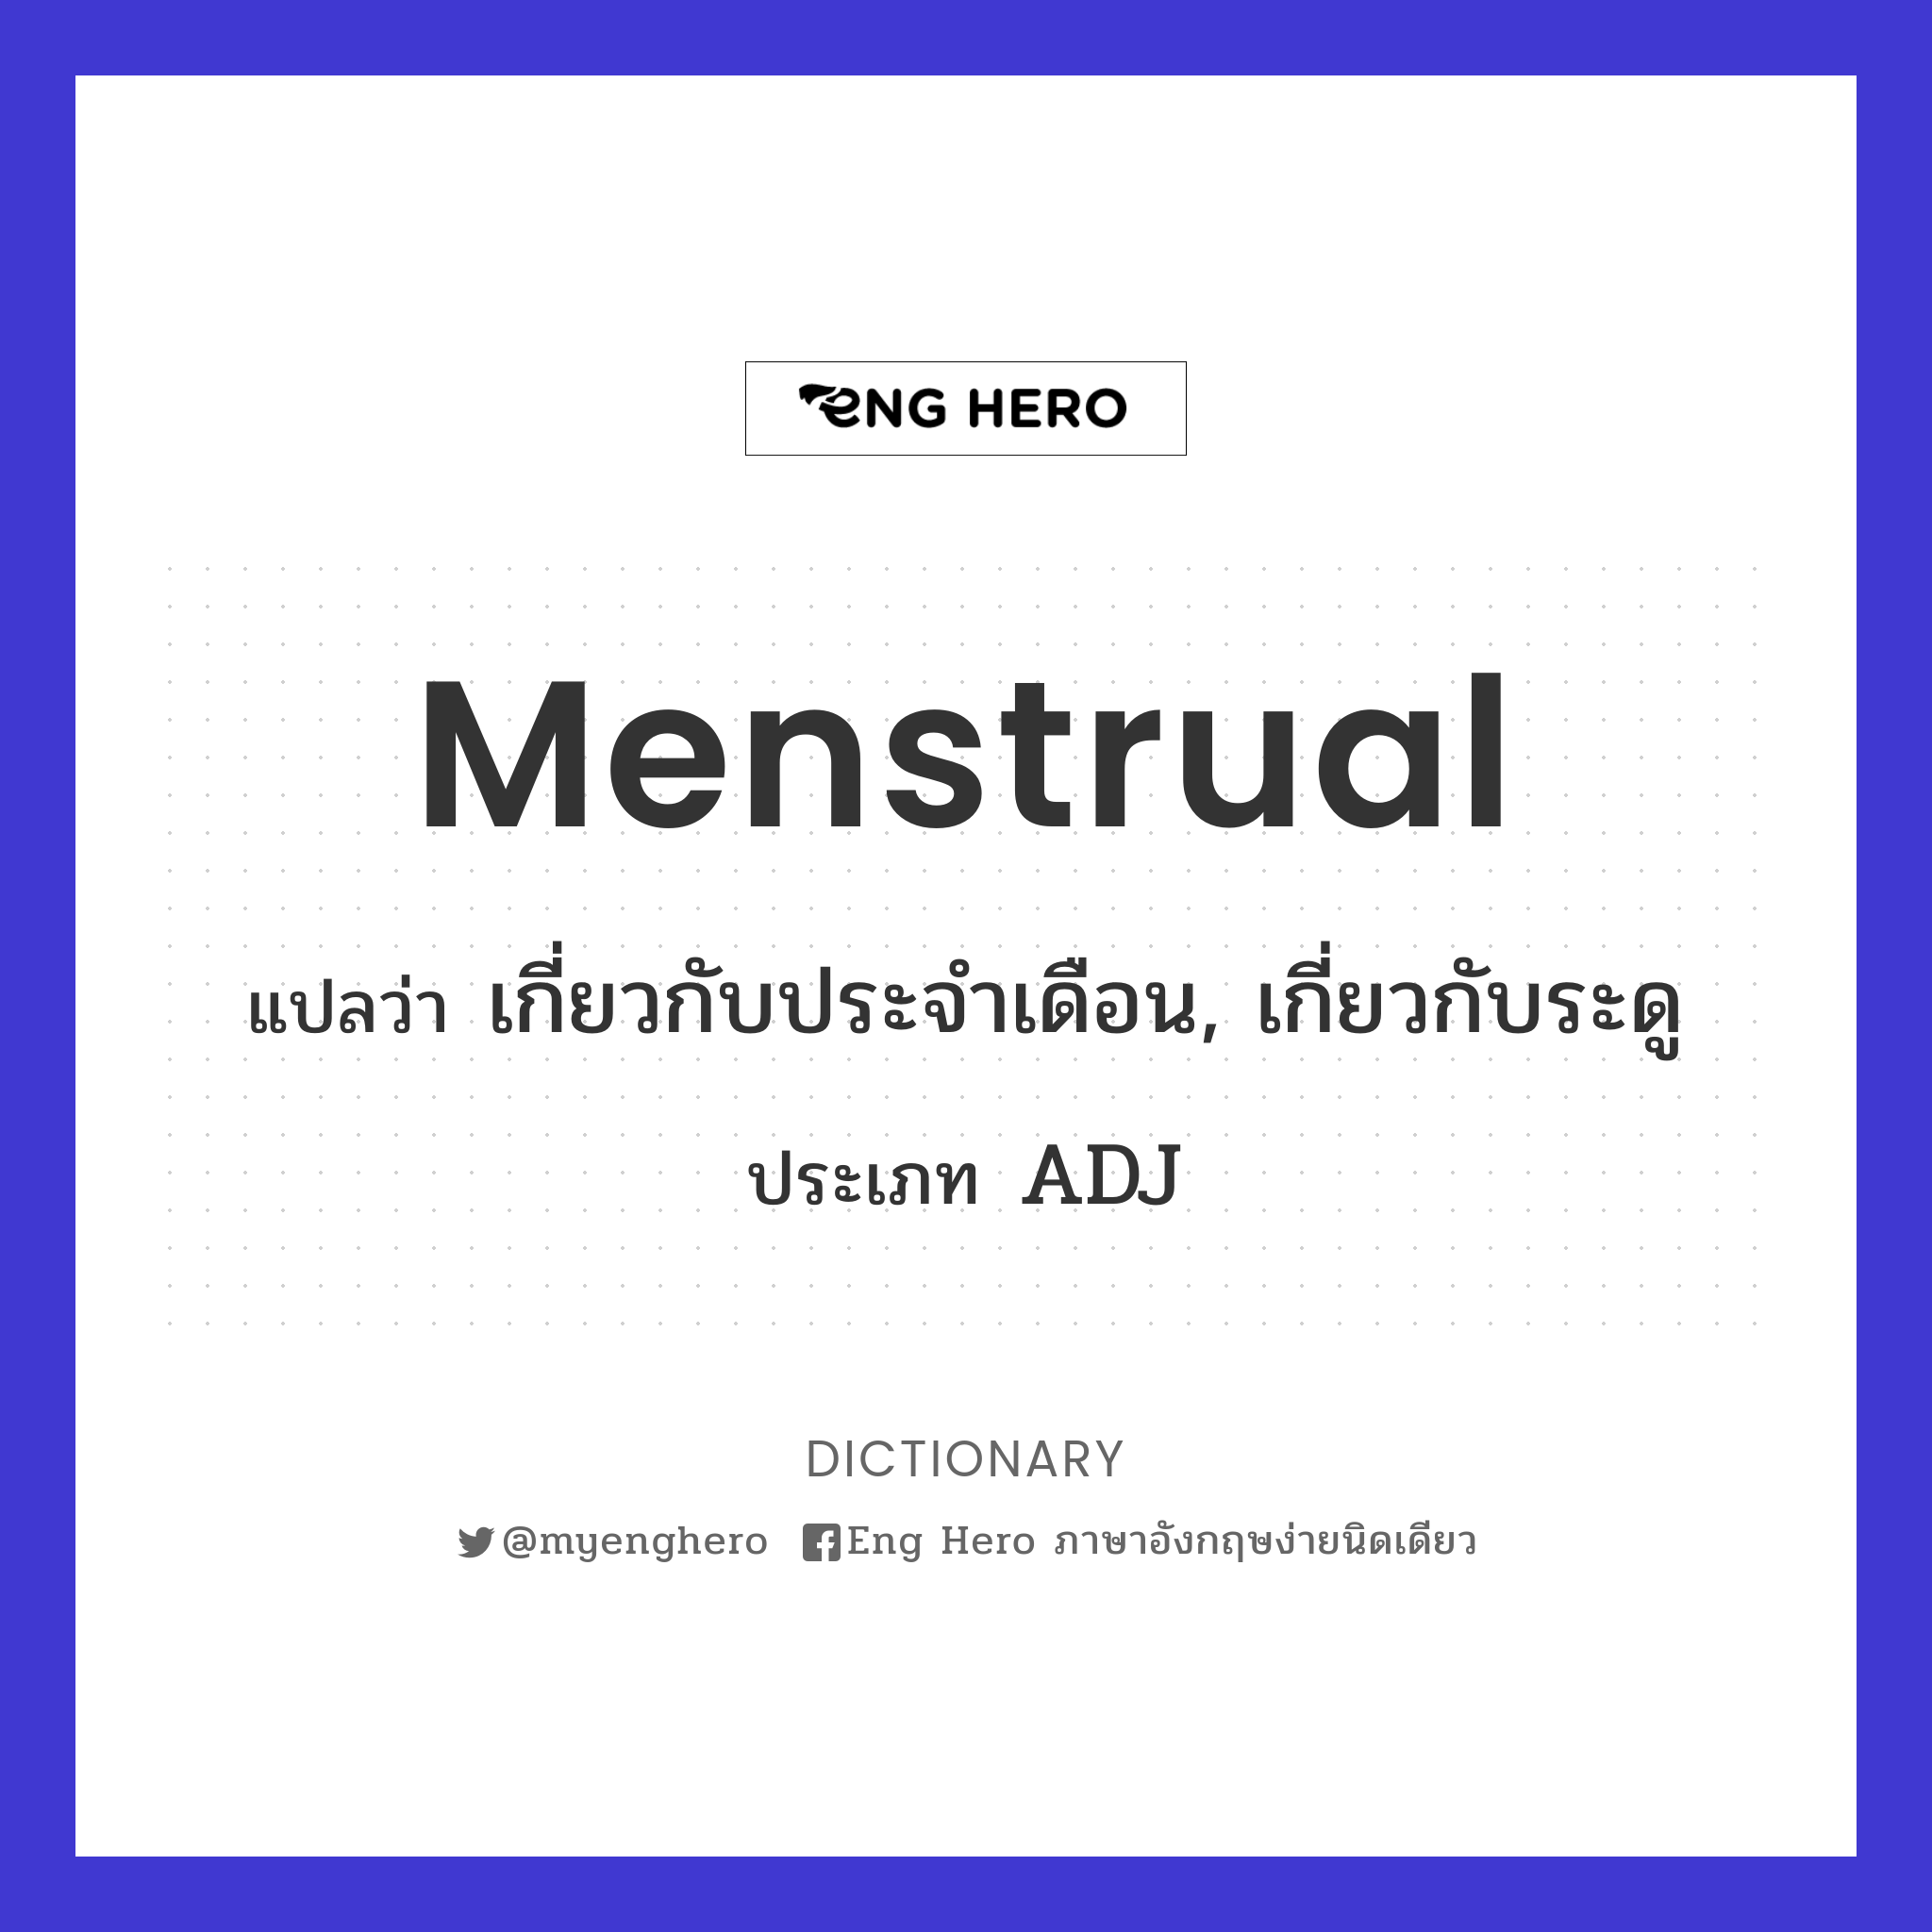 menstrual